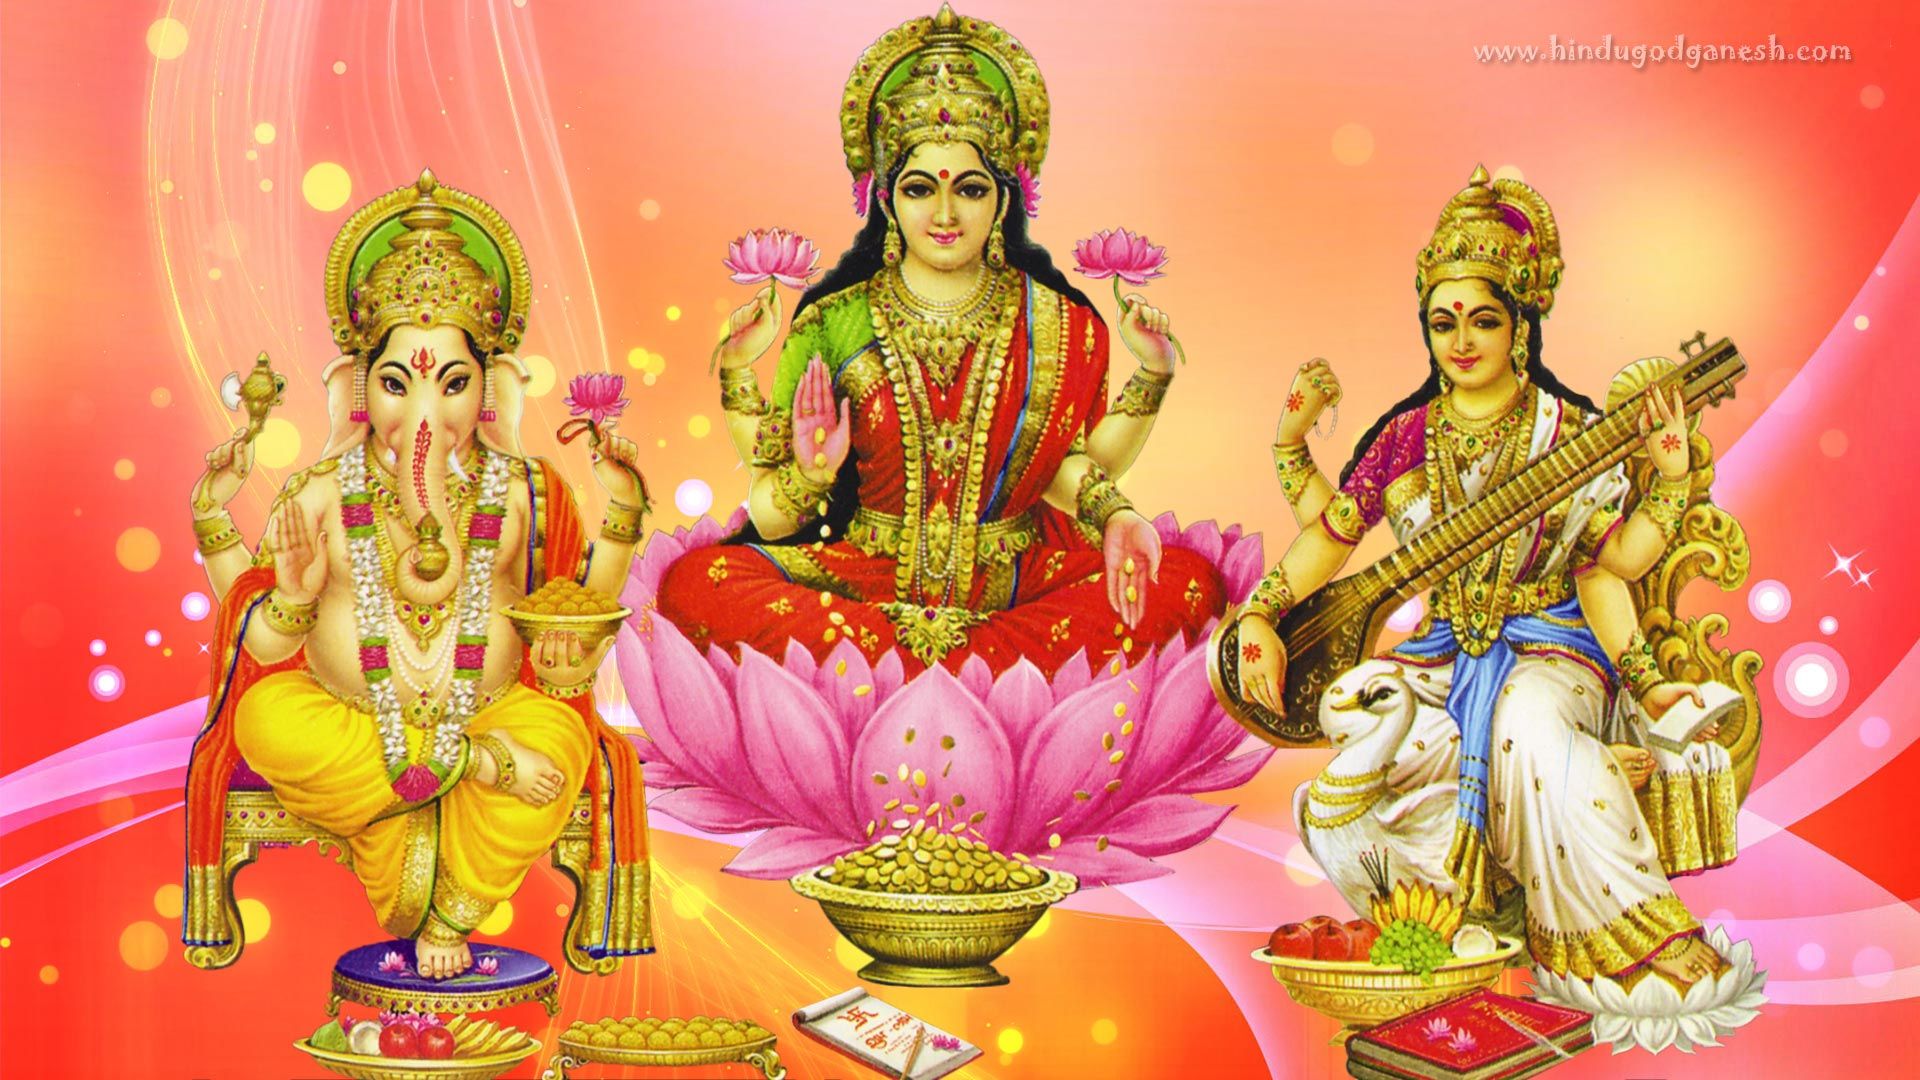 God lakshmi image full HD wallpaper for mobile & desktop